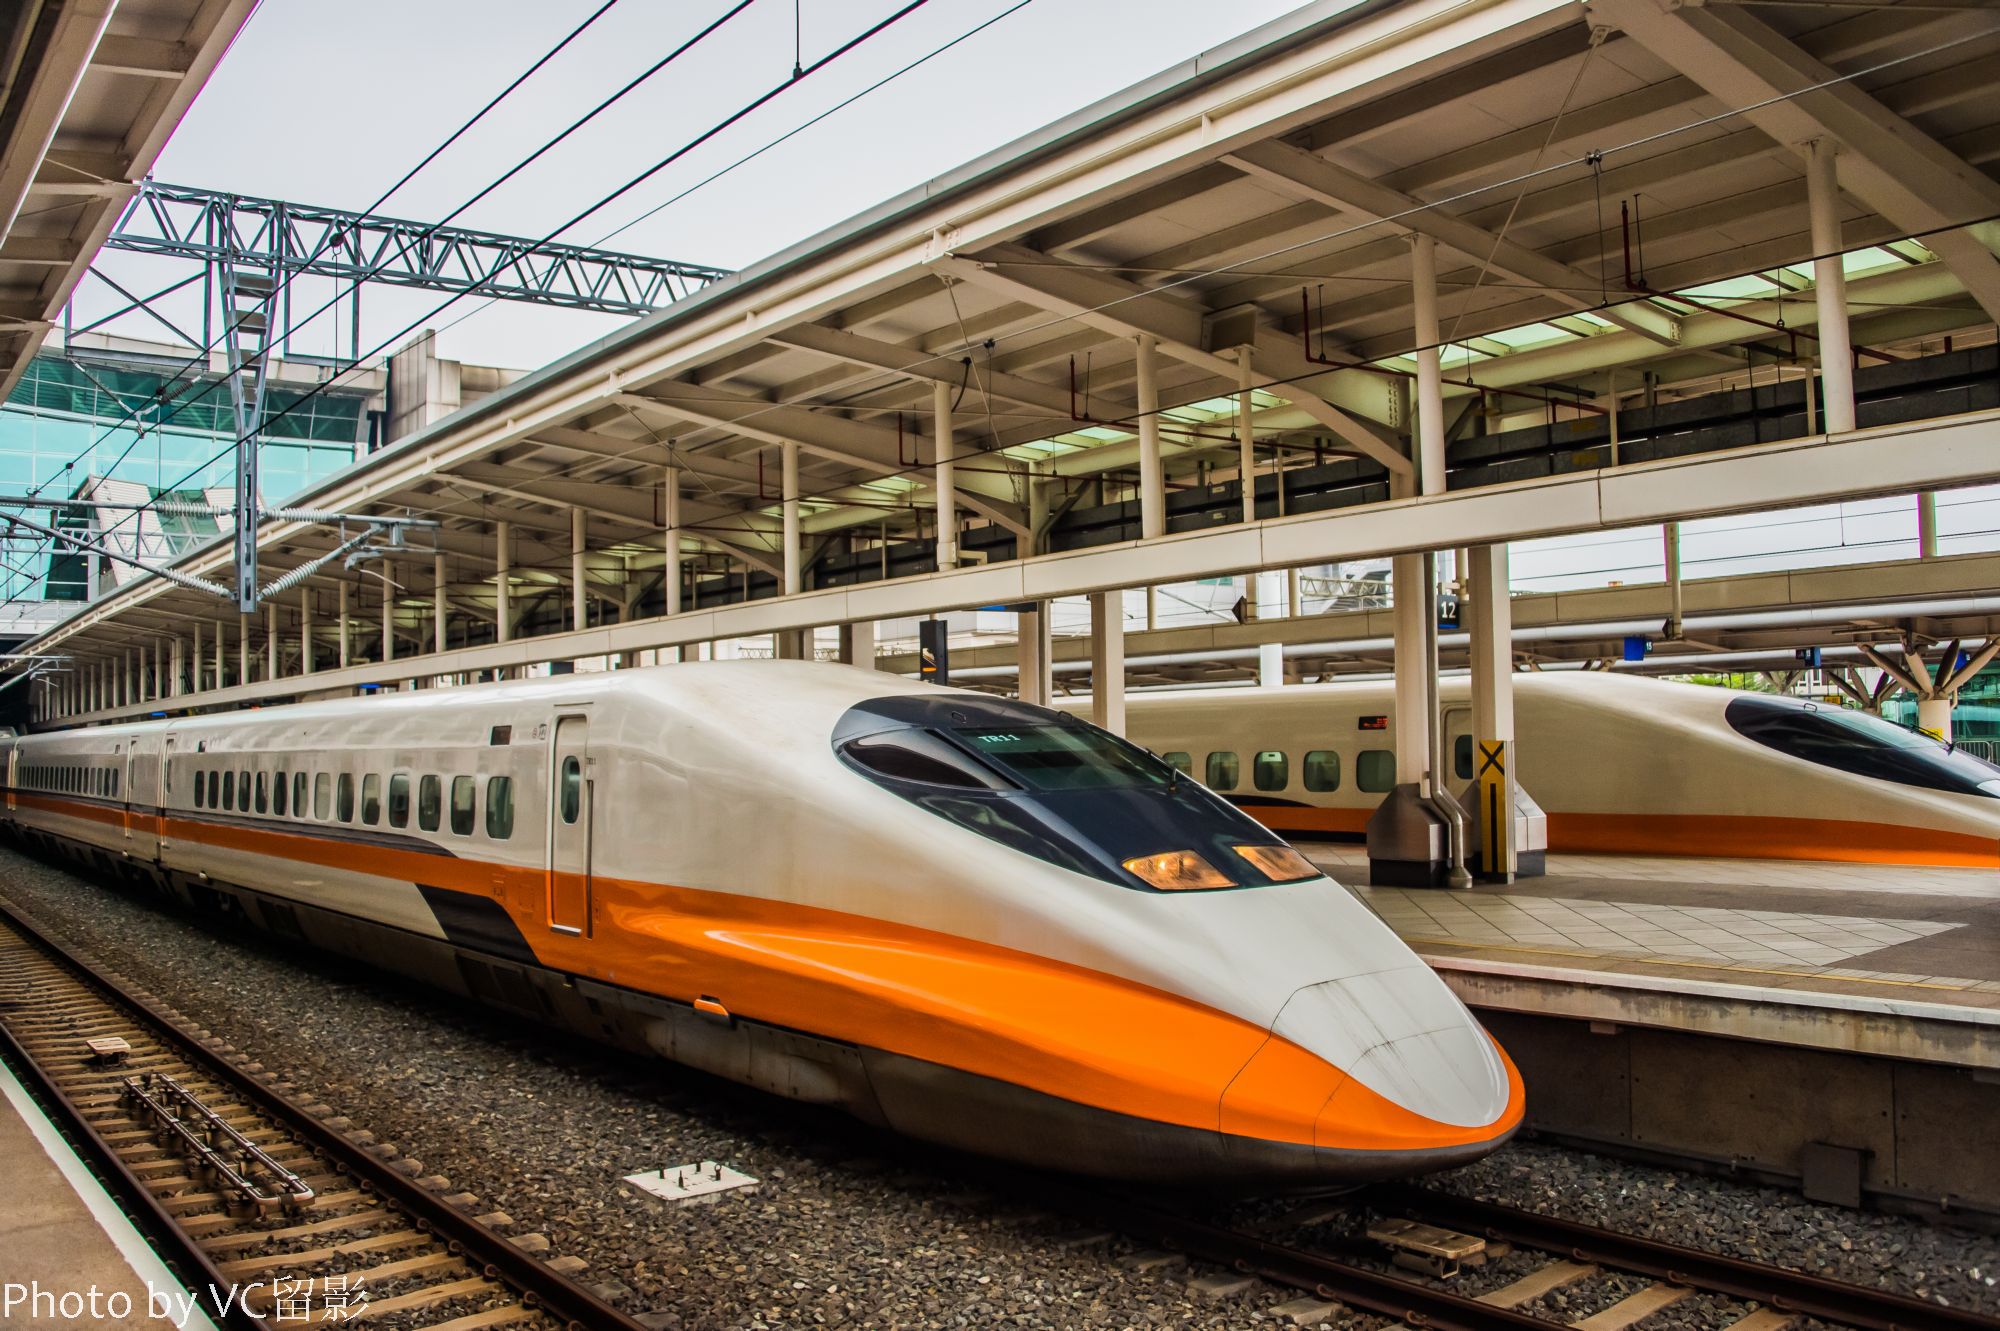 【携程攻略】高雄台湾高铁优惠票(高雄出发)娱乐点,高速铁路由台北到